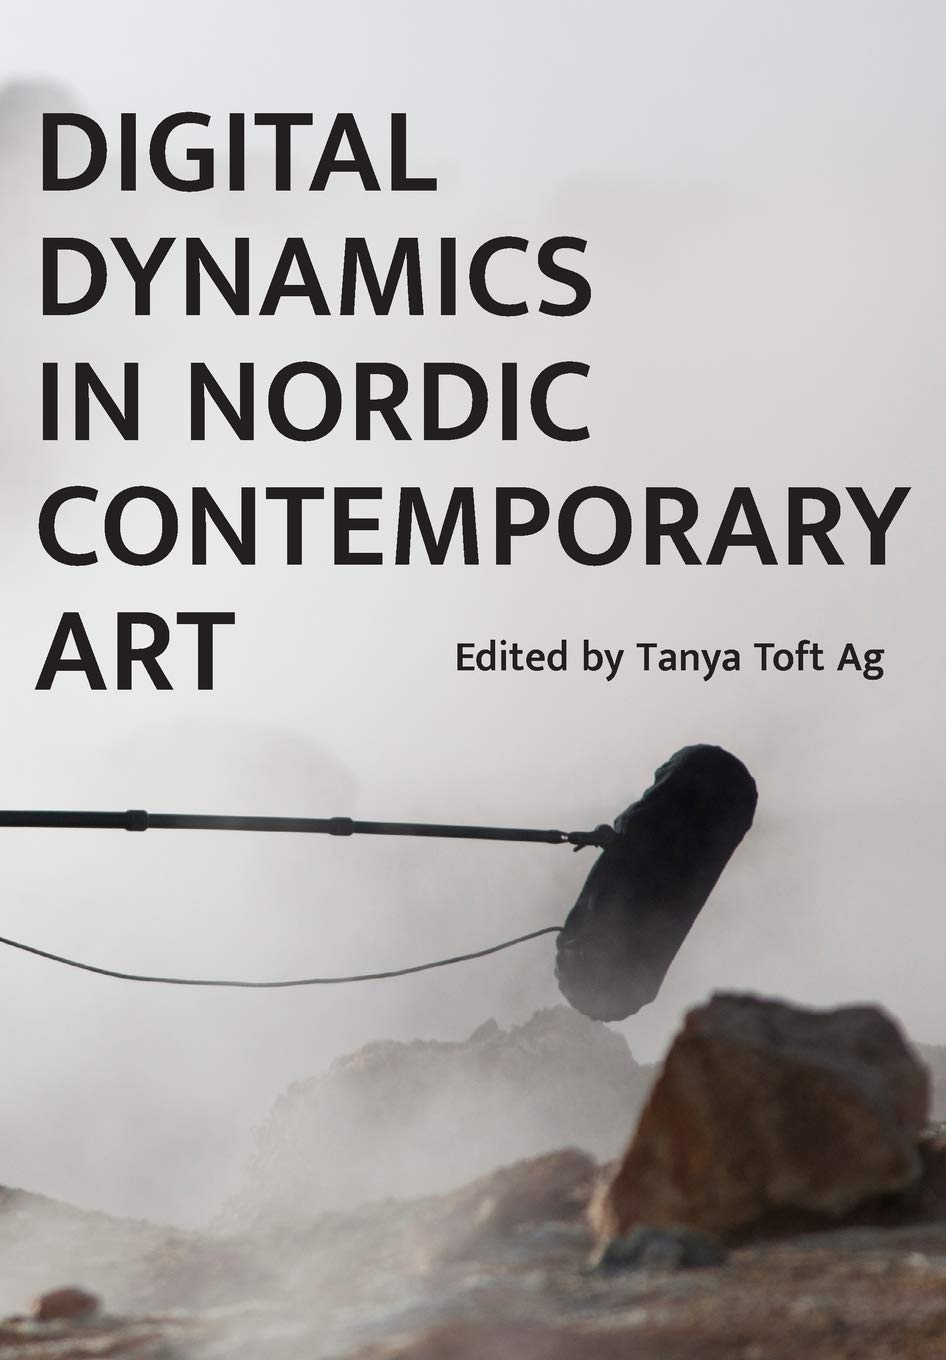 LIbri UK/US Ag, Tanya Toft - Digital Dynamics In Nordic Contemporary Art NUOVO SIGILLATO, EDIZIONE DEL 01/01/2019 SUBITO DISPONIBILE